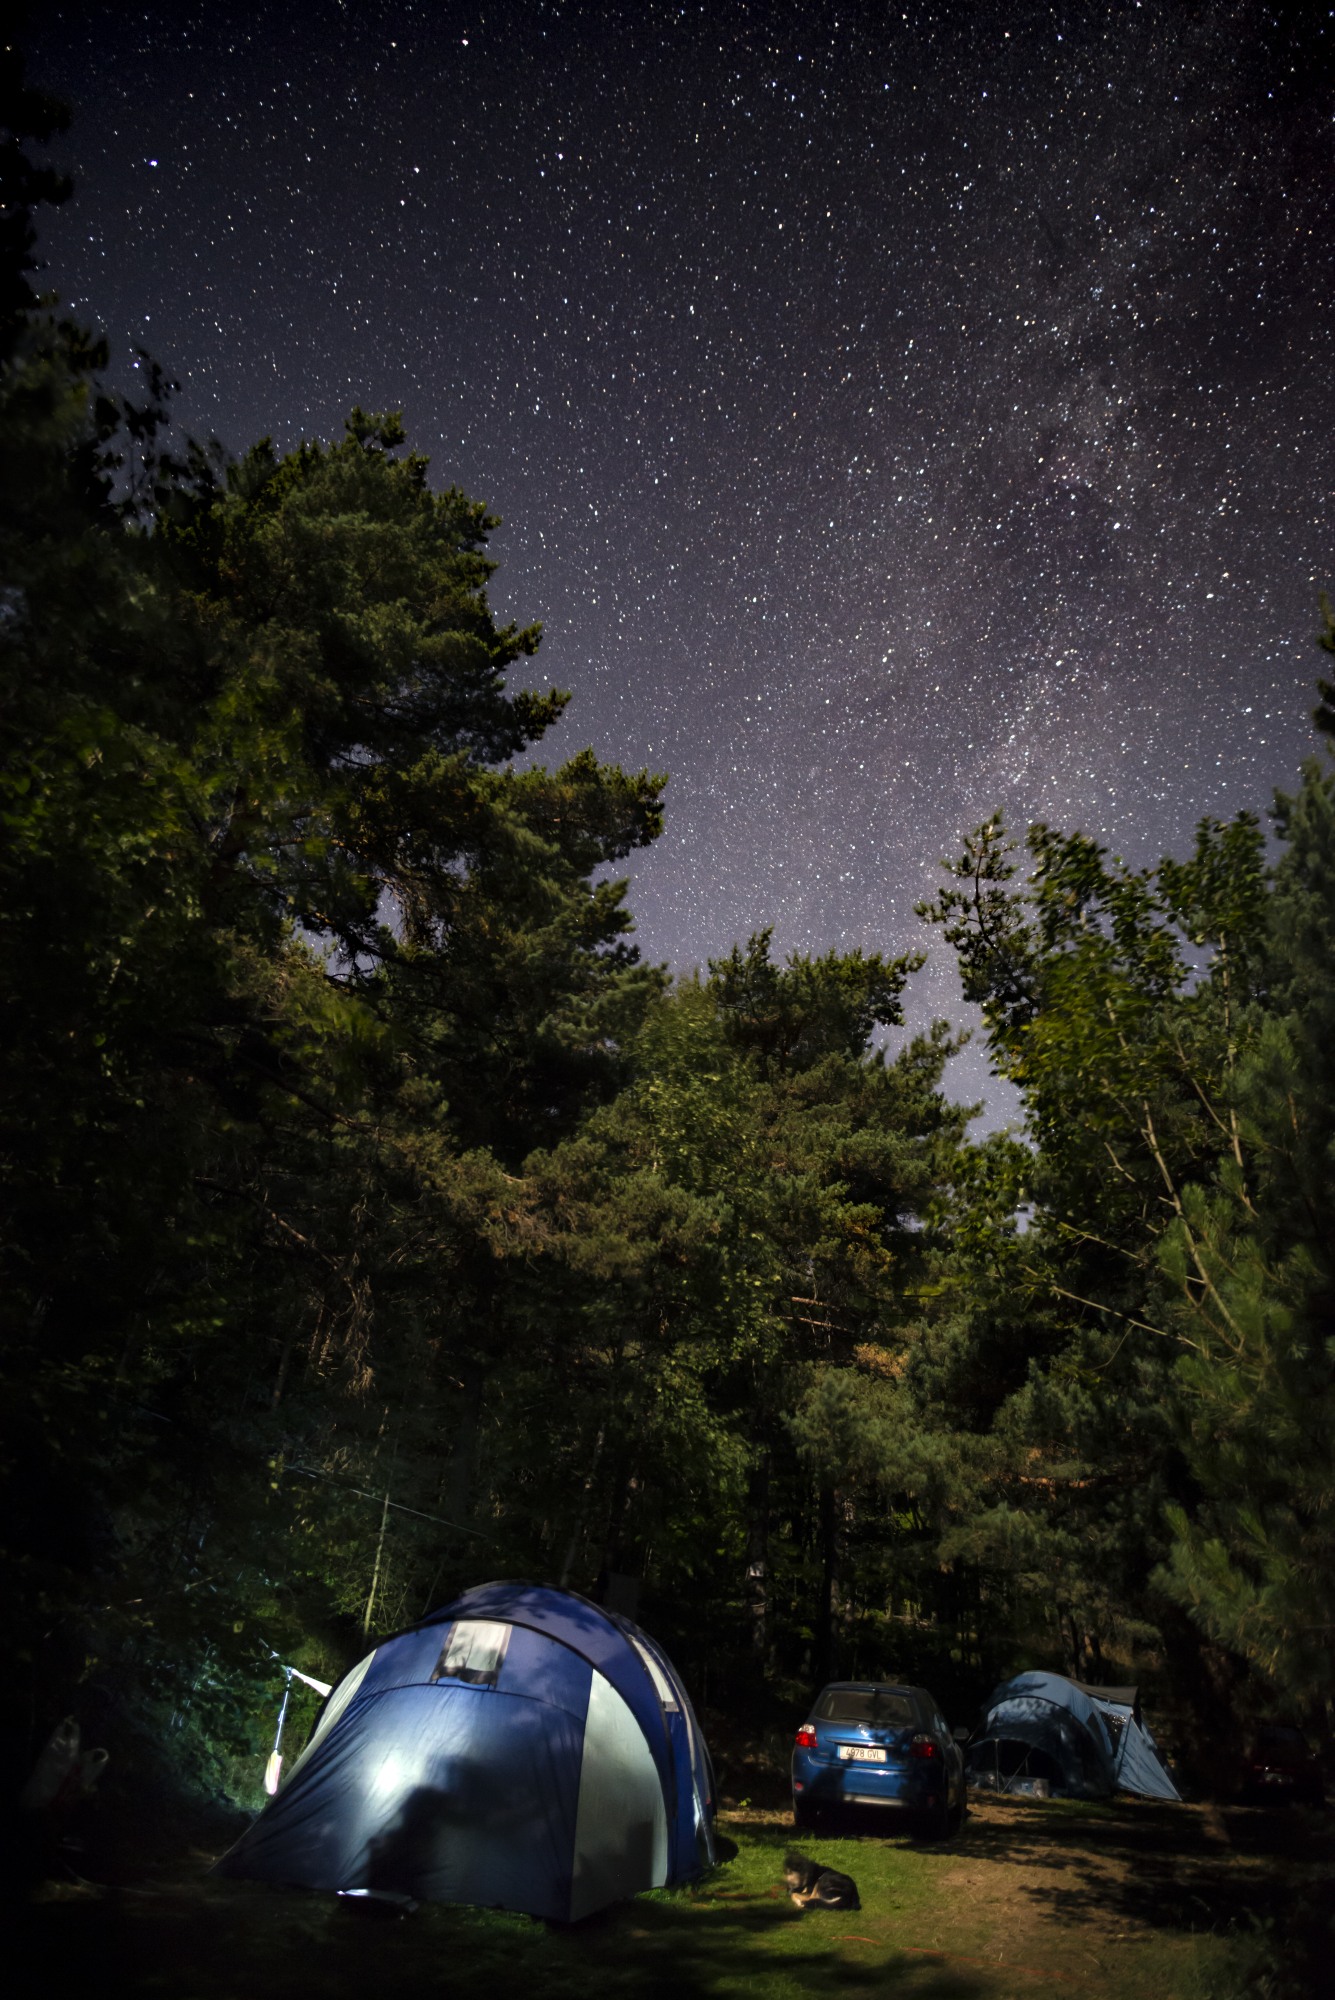 Camping la nuit sous les étoiles